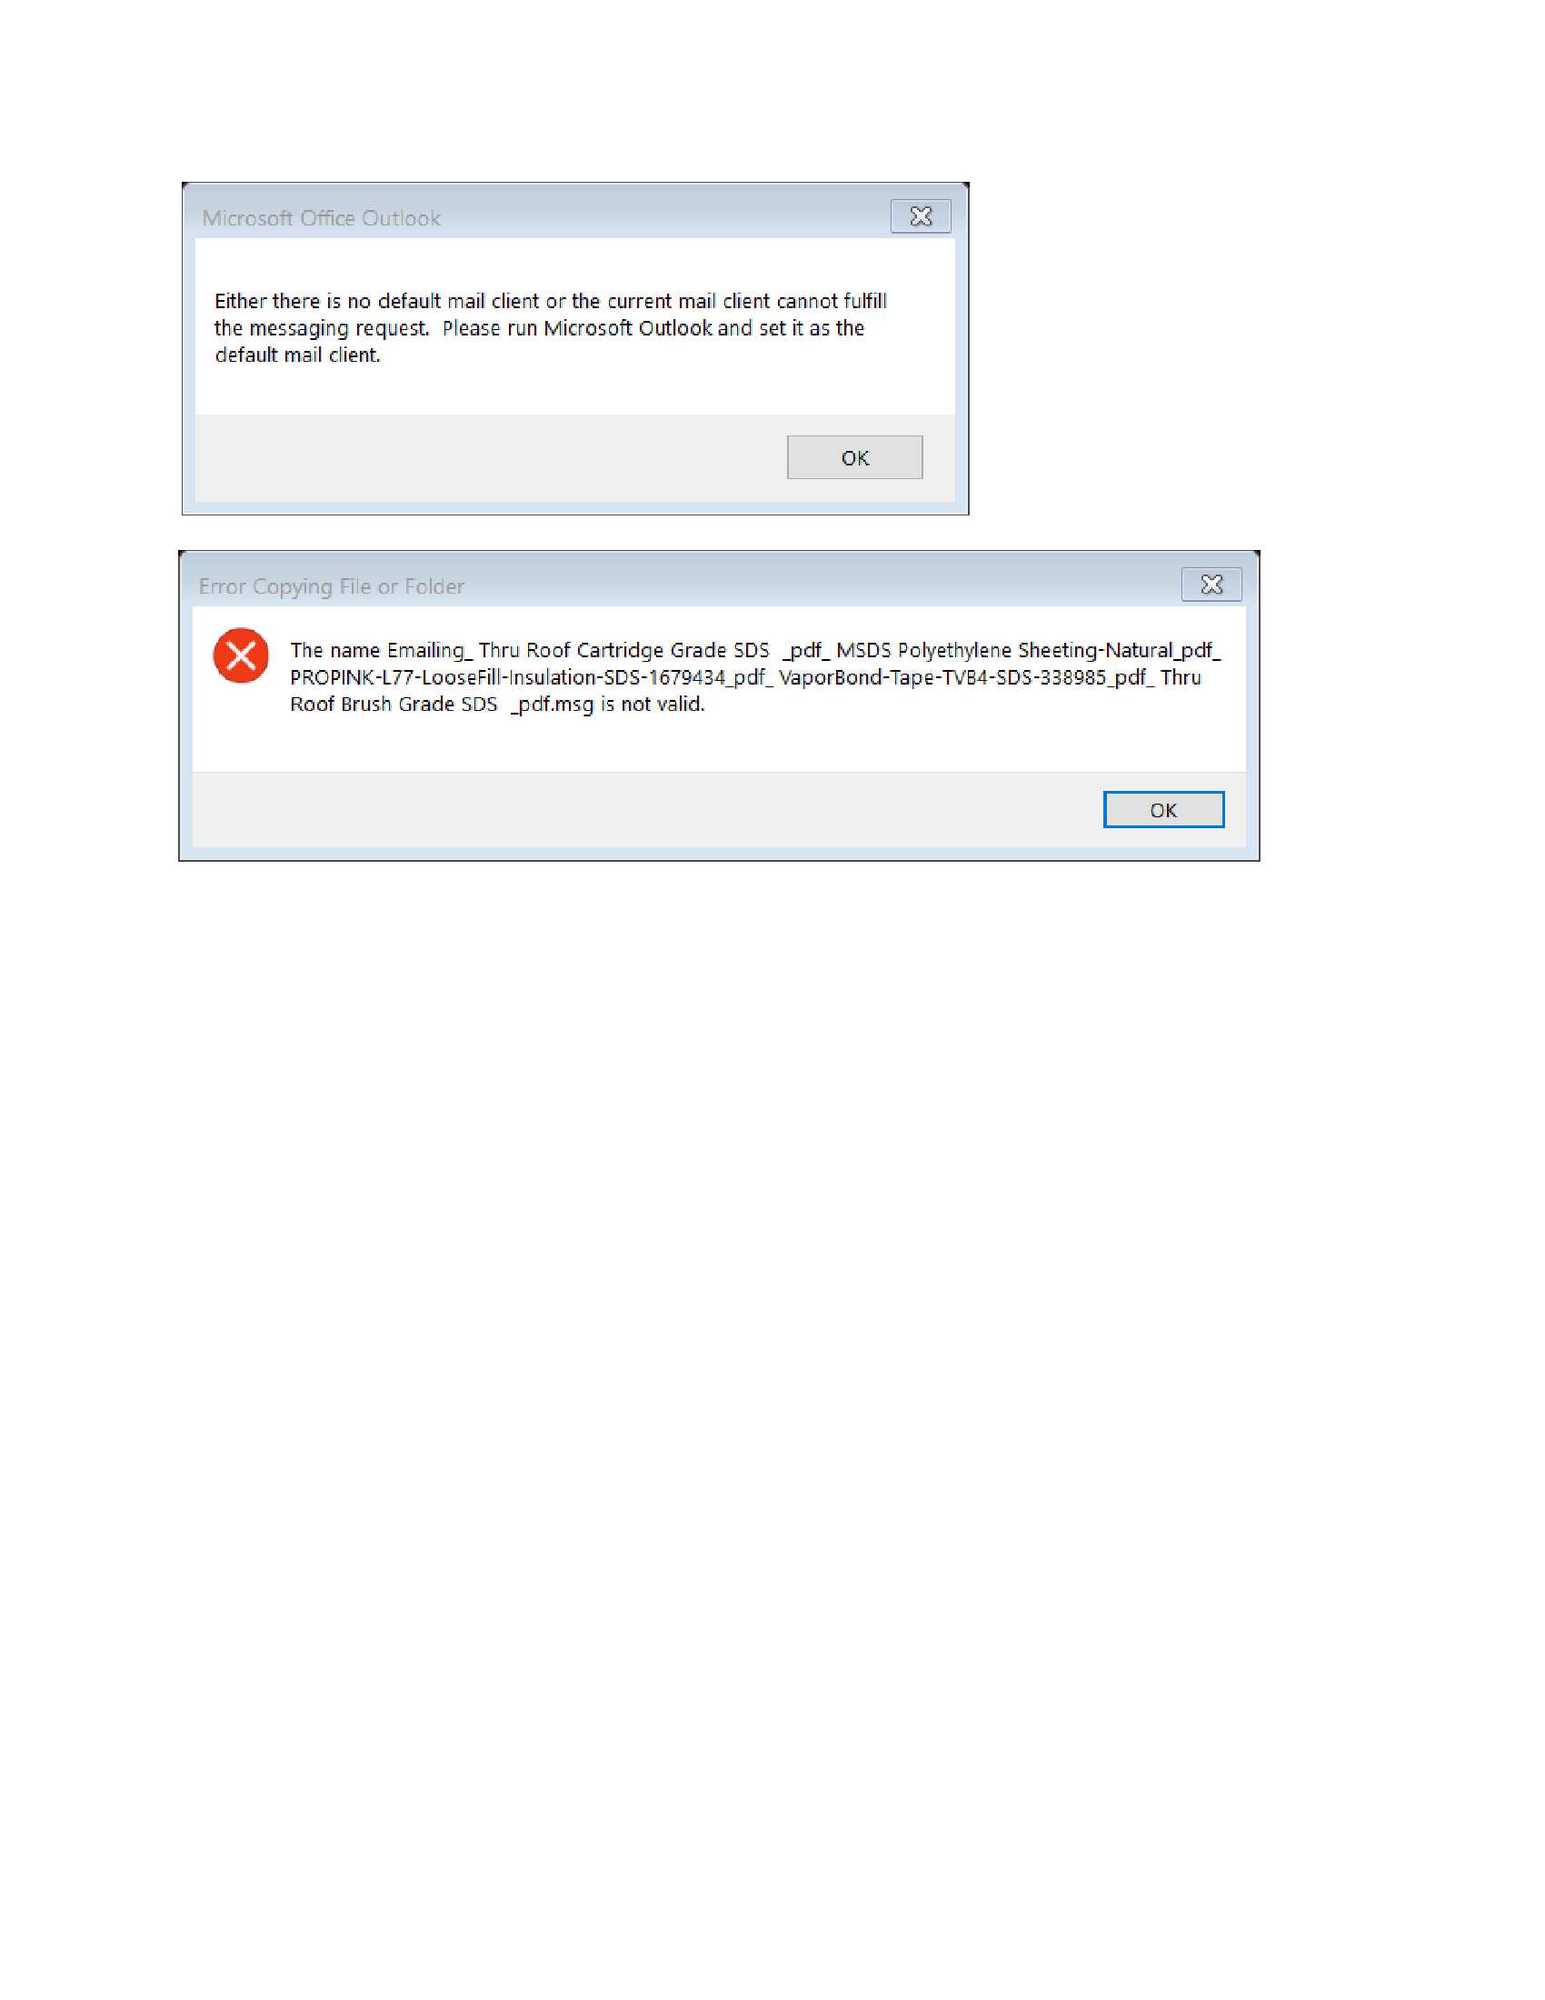 Outlook Office 365 errors "NOT DEFAULT MAIL CLIENT" even after verifying that IT IS 80ac5a8f-b324-4f67-828b-82c6e07c303e?upload=true.jpg